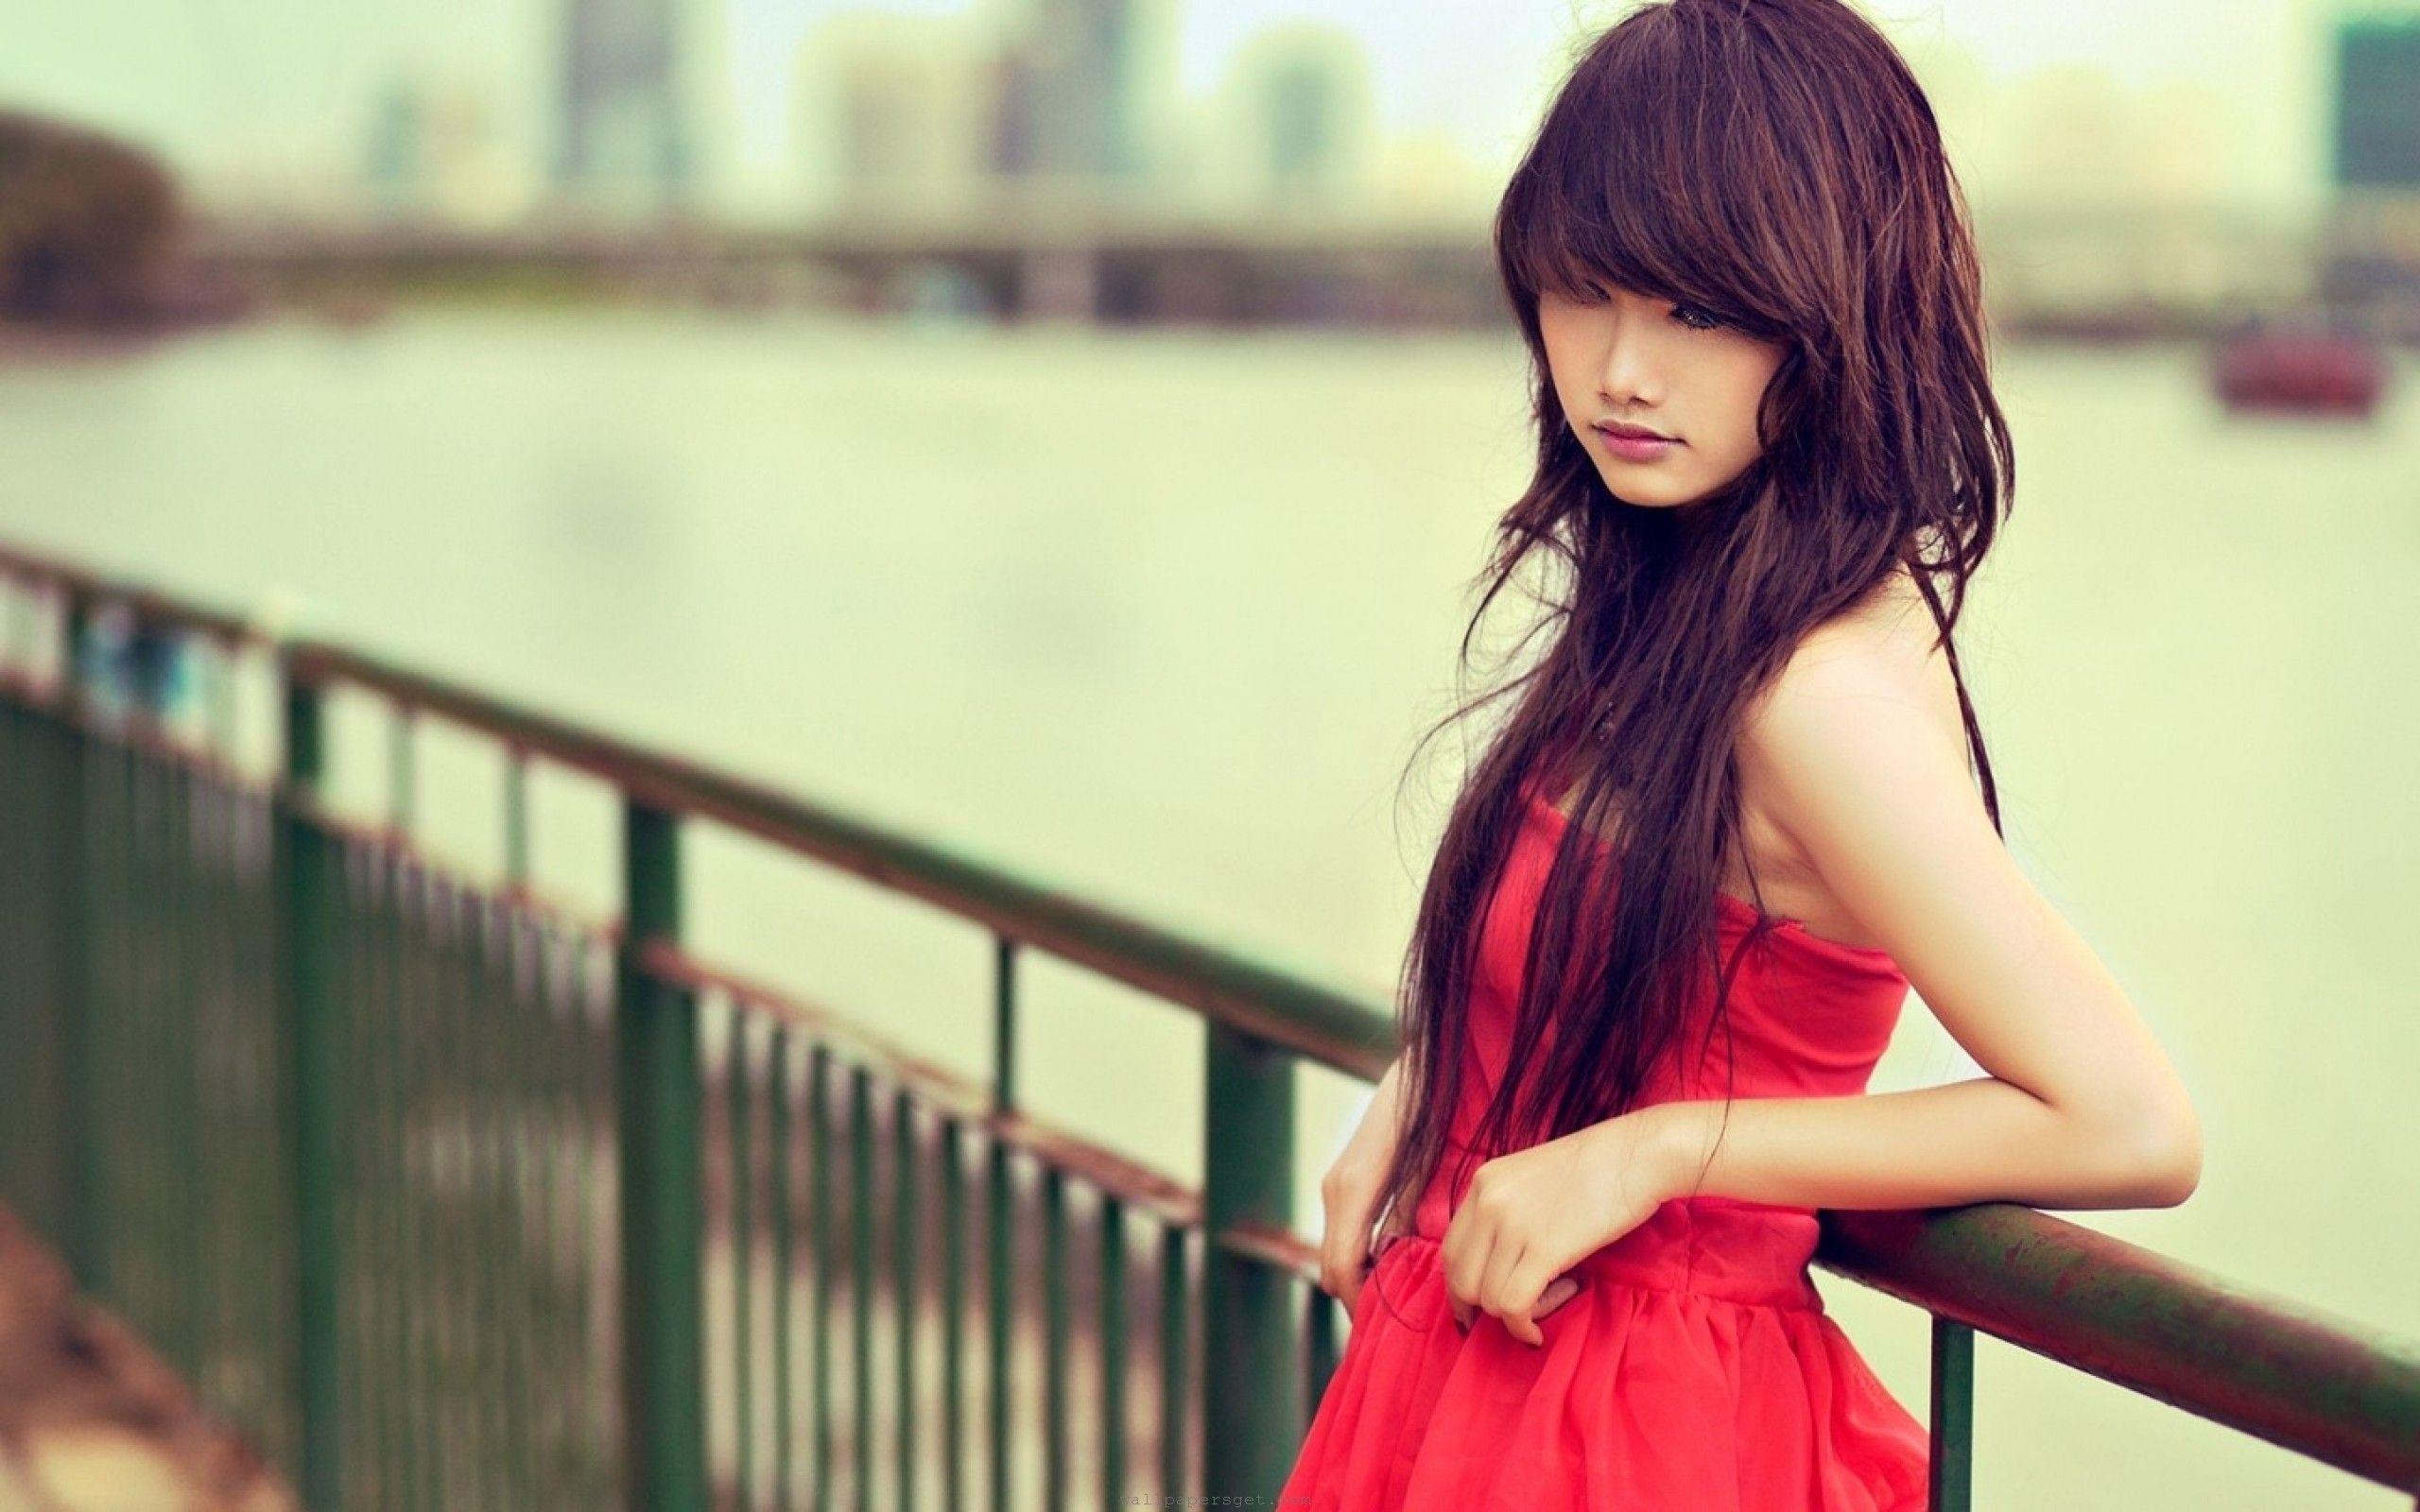 Cute And Beautiful Asian Girls Wallpaper Full HD